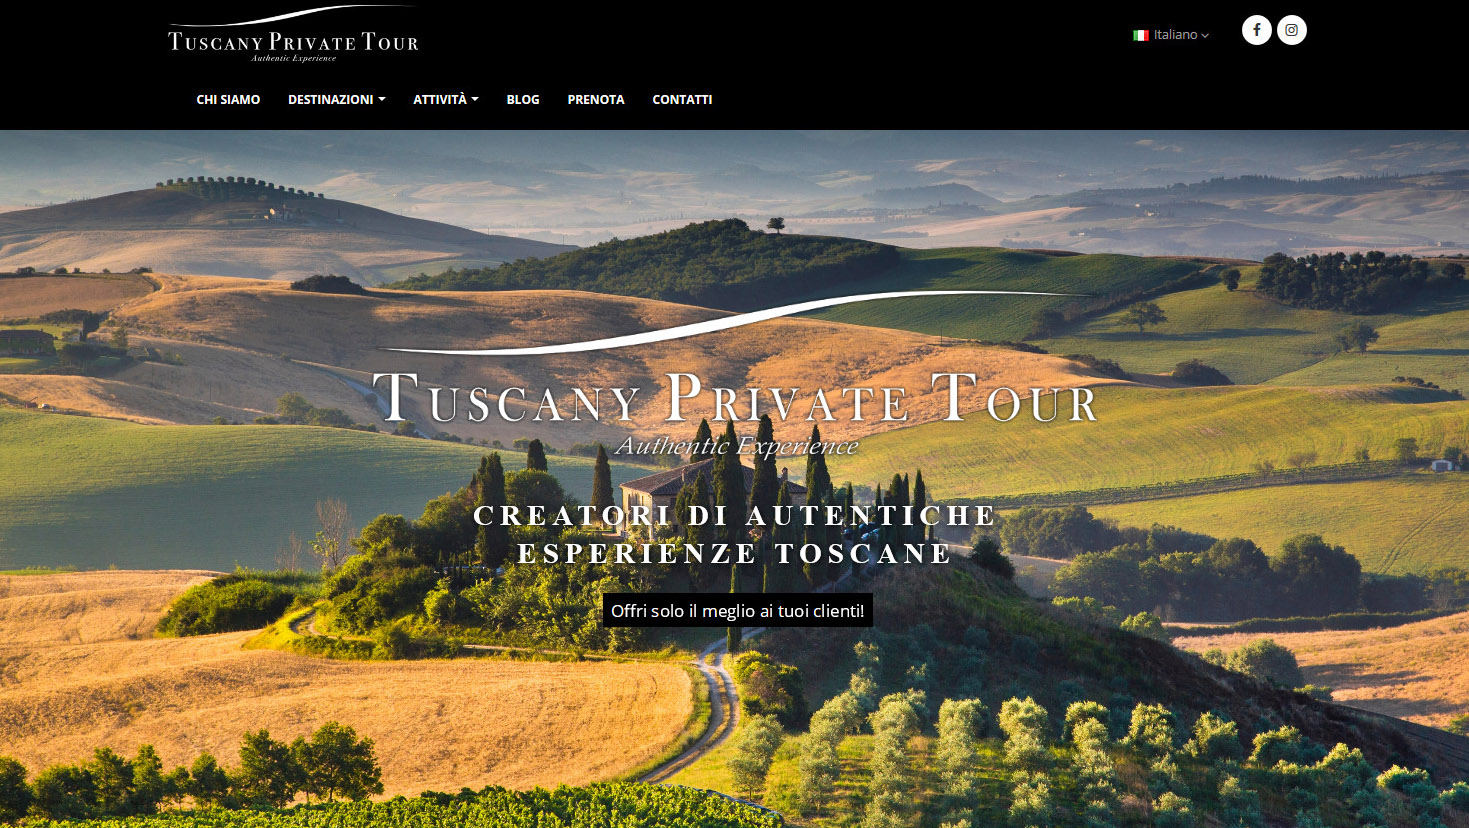 Anteprima di http://www.tuscanyprivatetour.com. Clicca per andare al sito